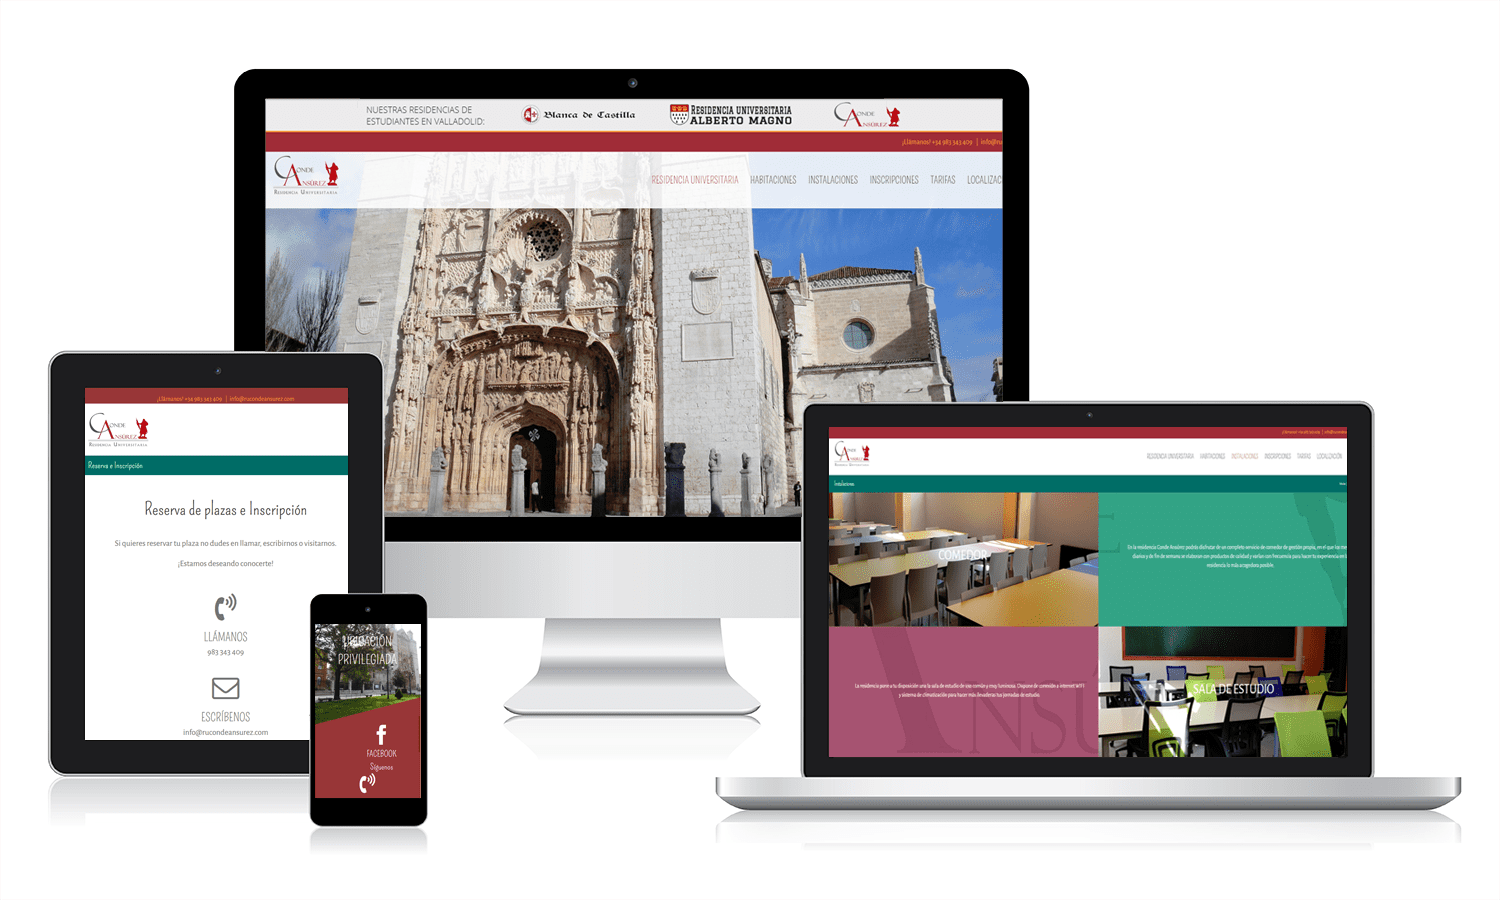 Diseño de páginas web en Valladolid